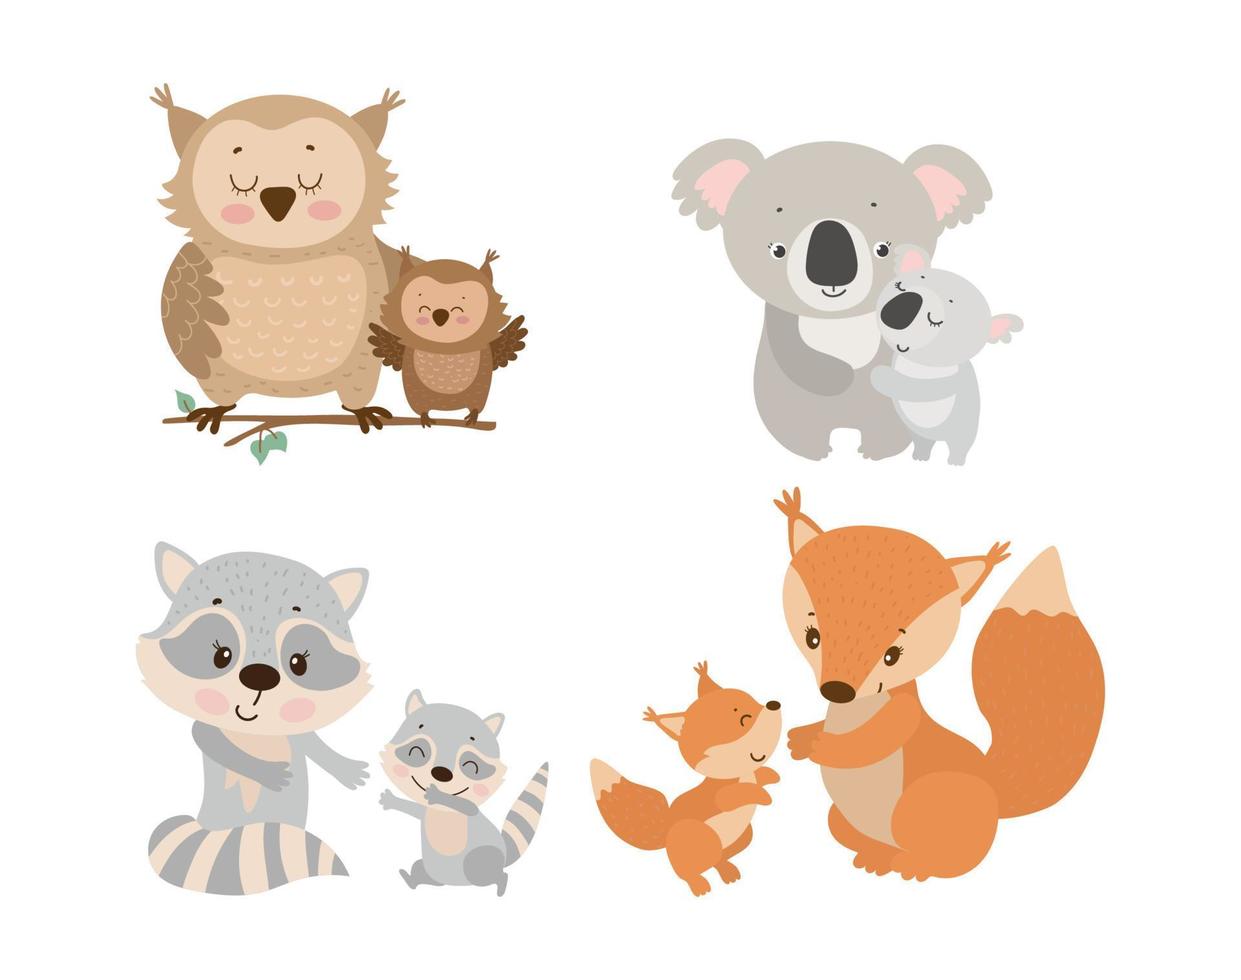 Illustrationen von Tiermüttern mit Babys vektor